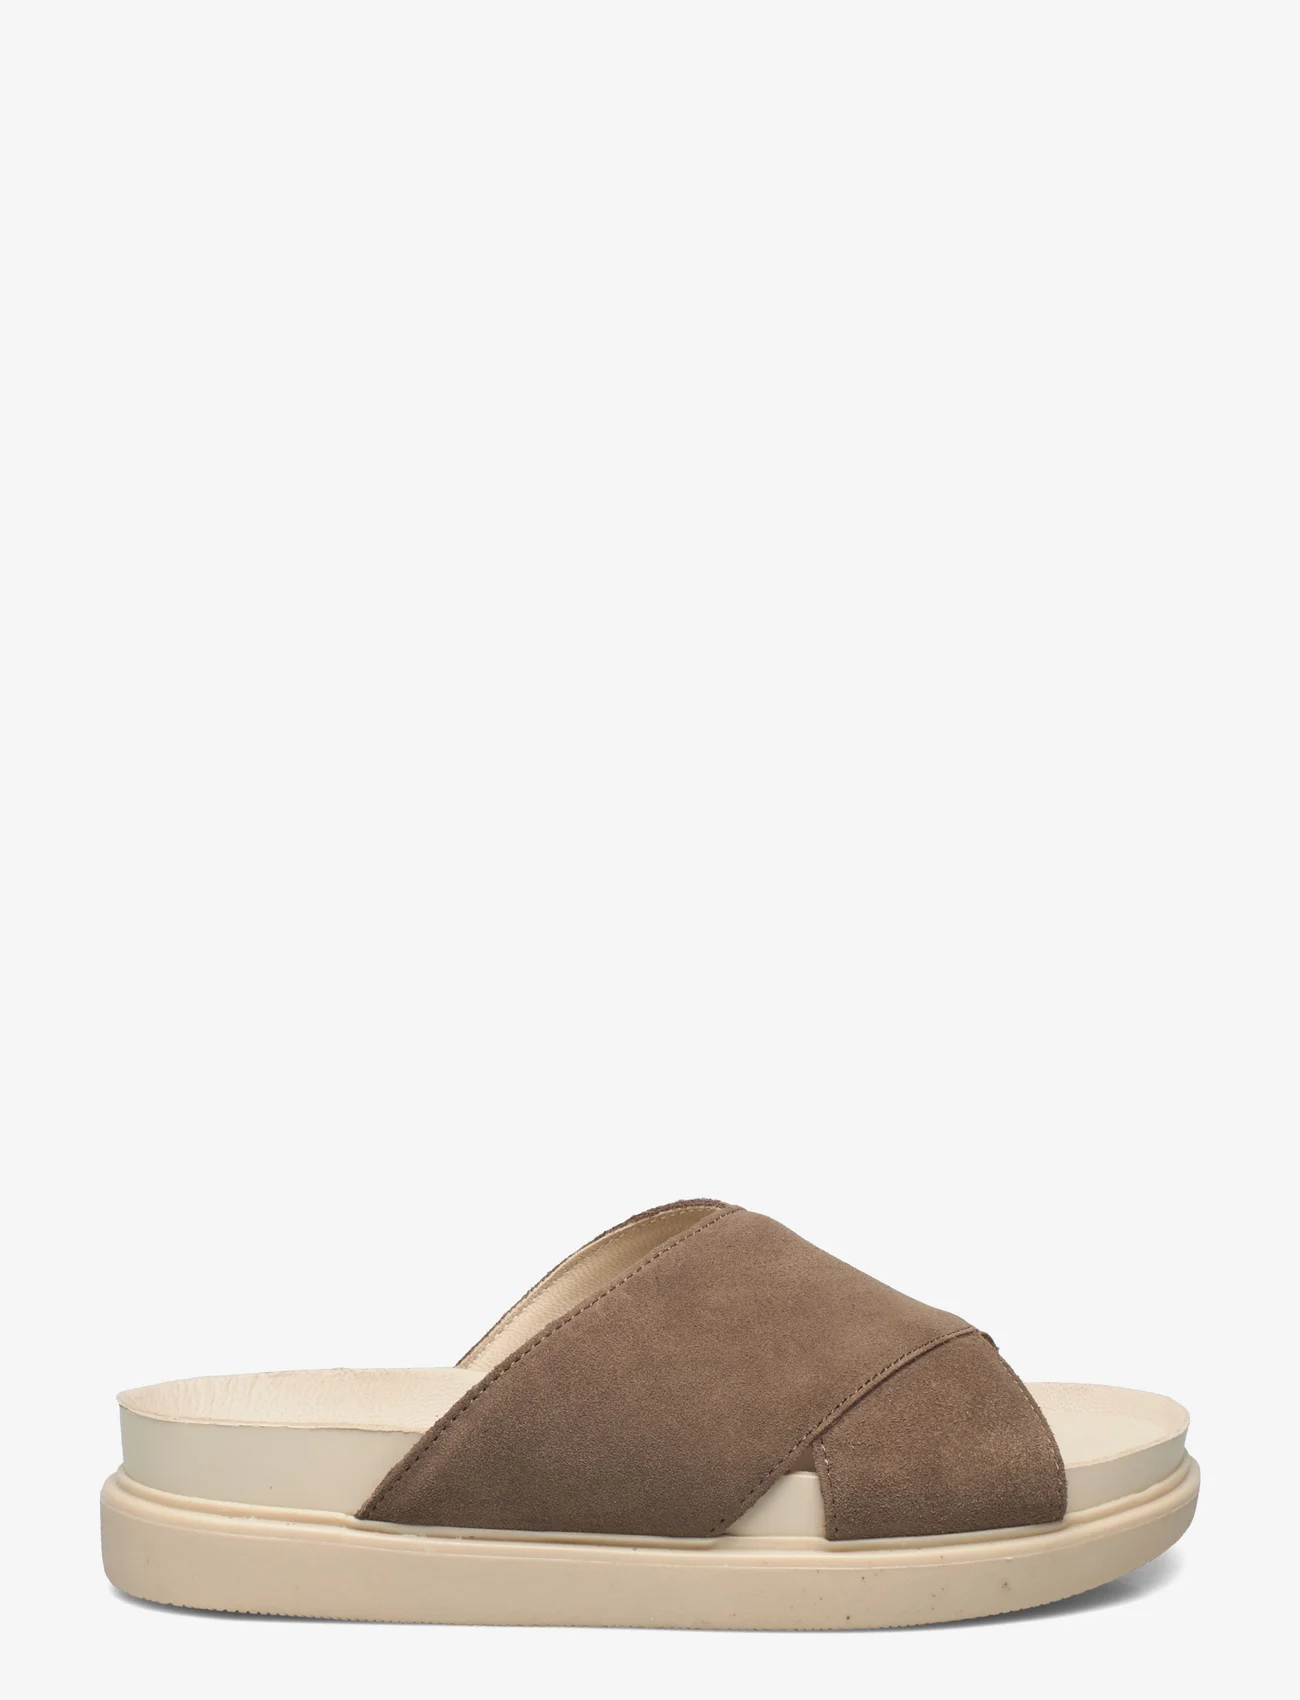 VAGABOND - ERIN - flat sandals - brown - 1